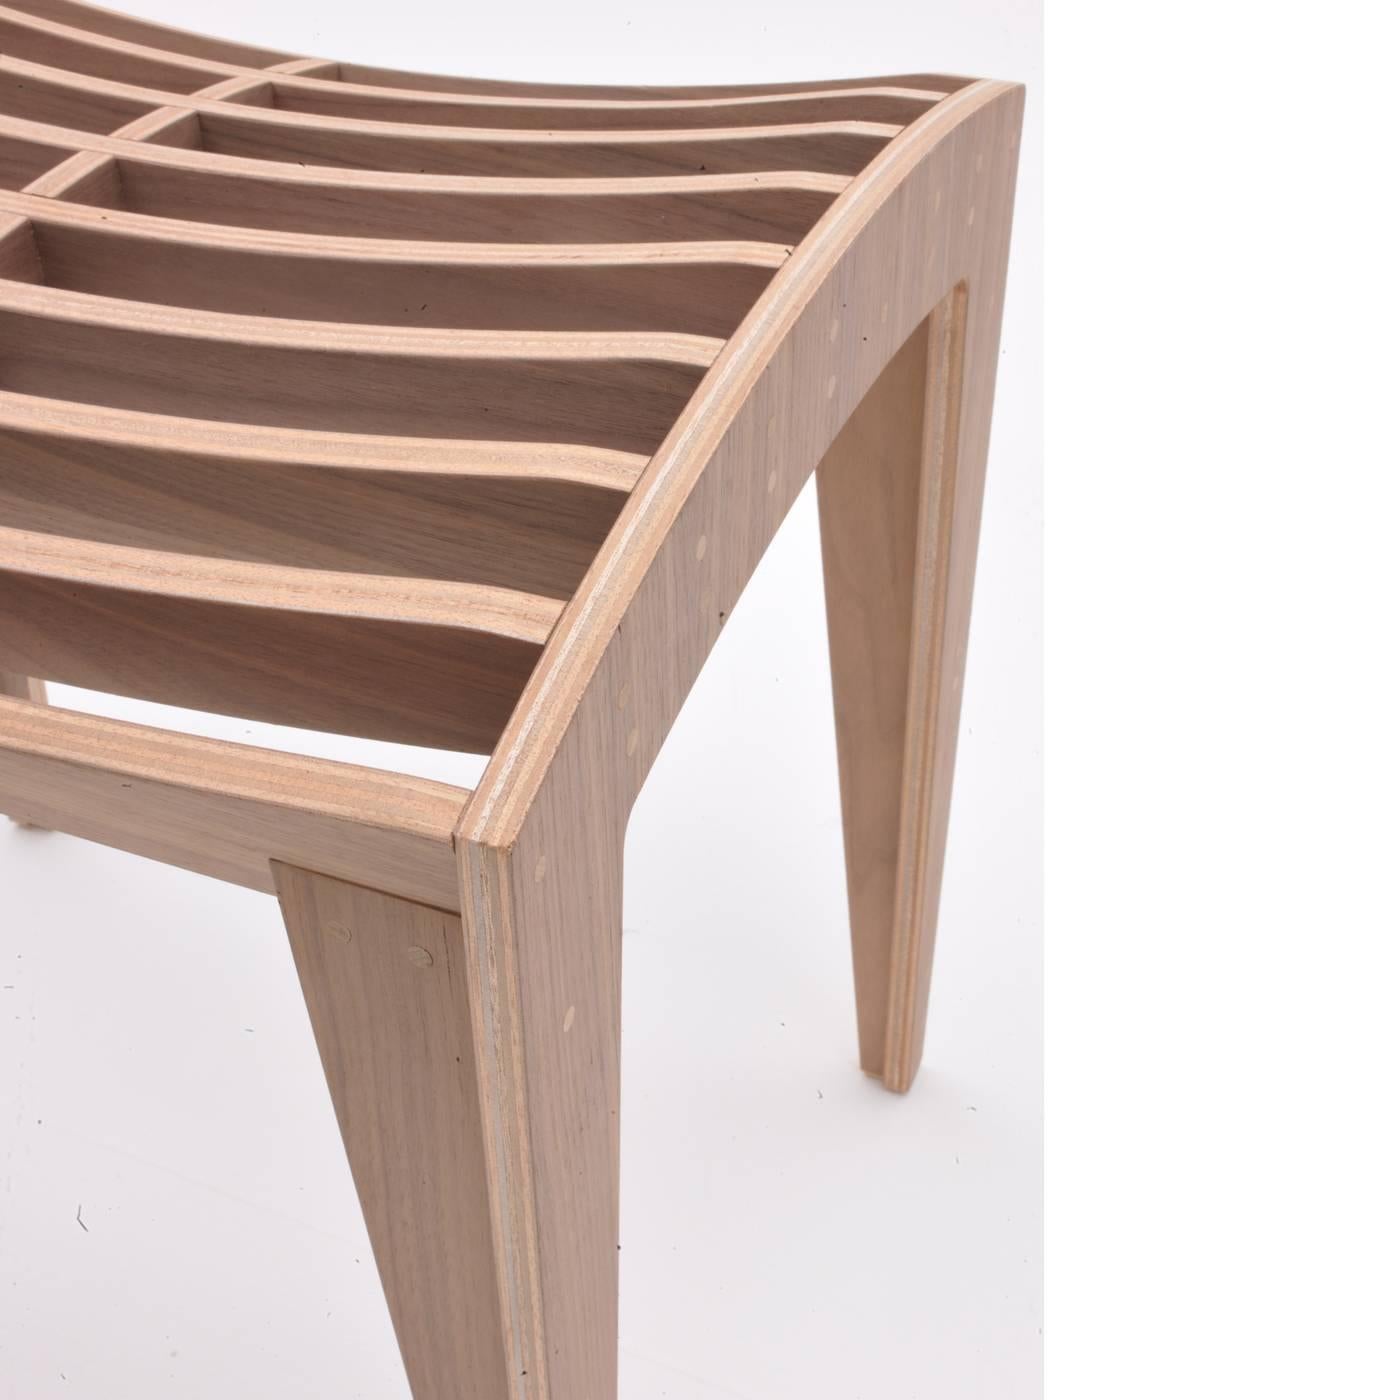 Dieses auffällige Stück wurde von Franco Poli für Morelato entworfen und ist das harmonische Ergebnis einer Mischung aus Design und idealer Materialwahl. Die Sitzfläche besteht aus Holzleisten, die durch einzelne Verbindungen und Stifte